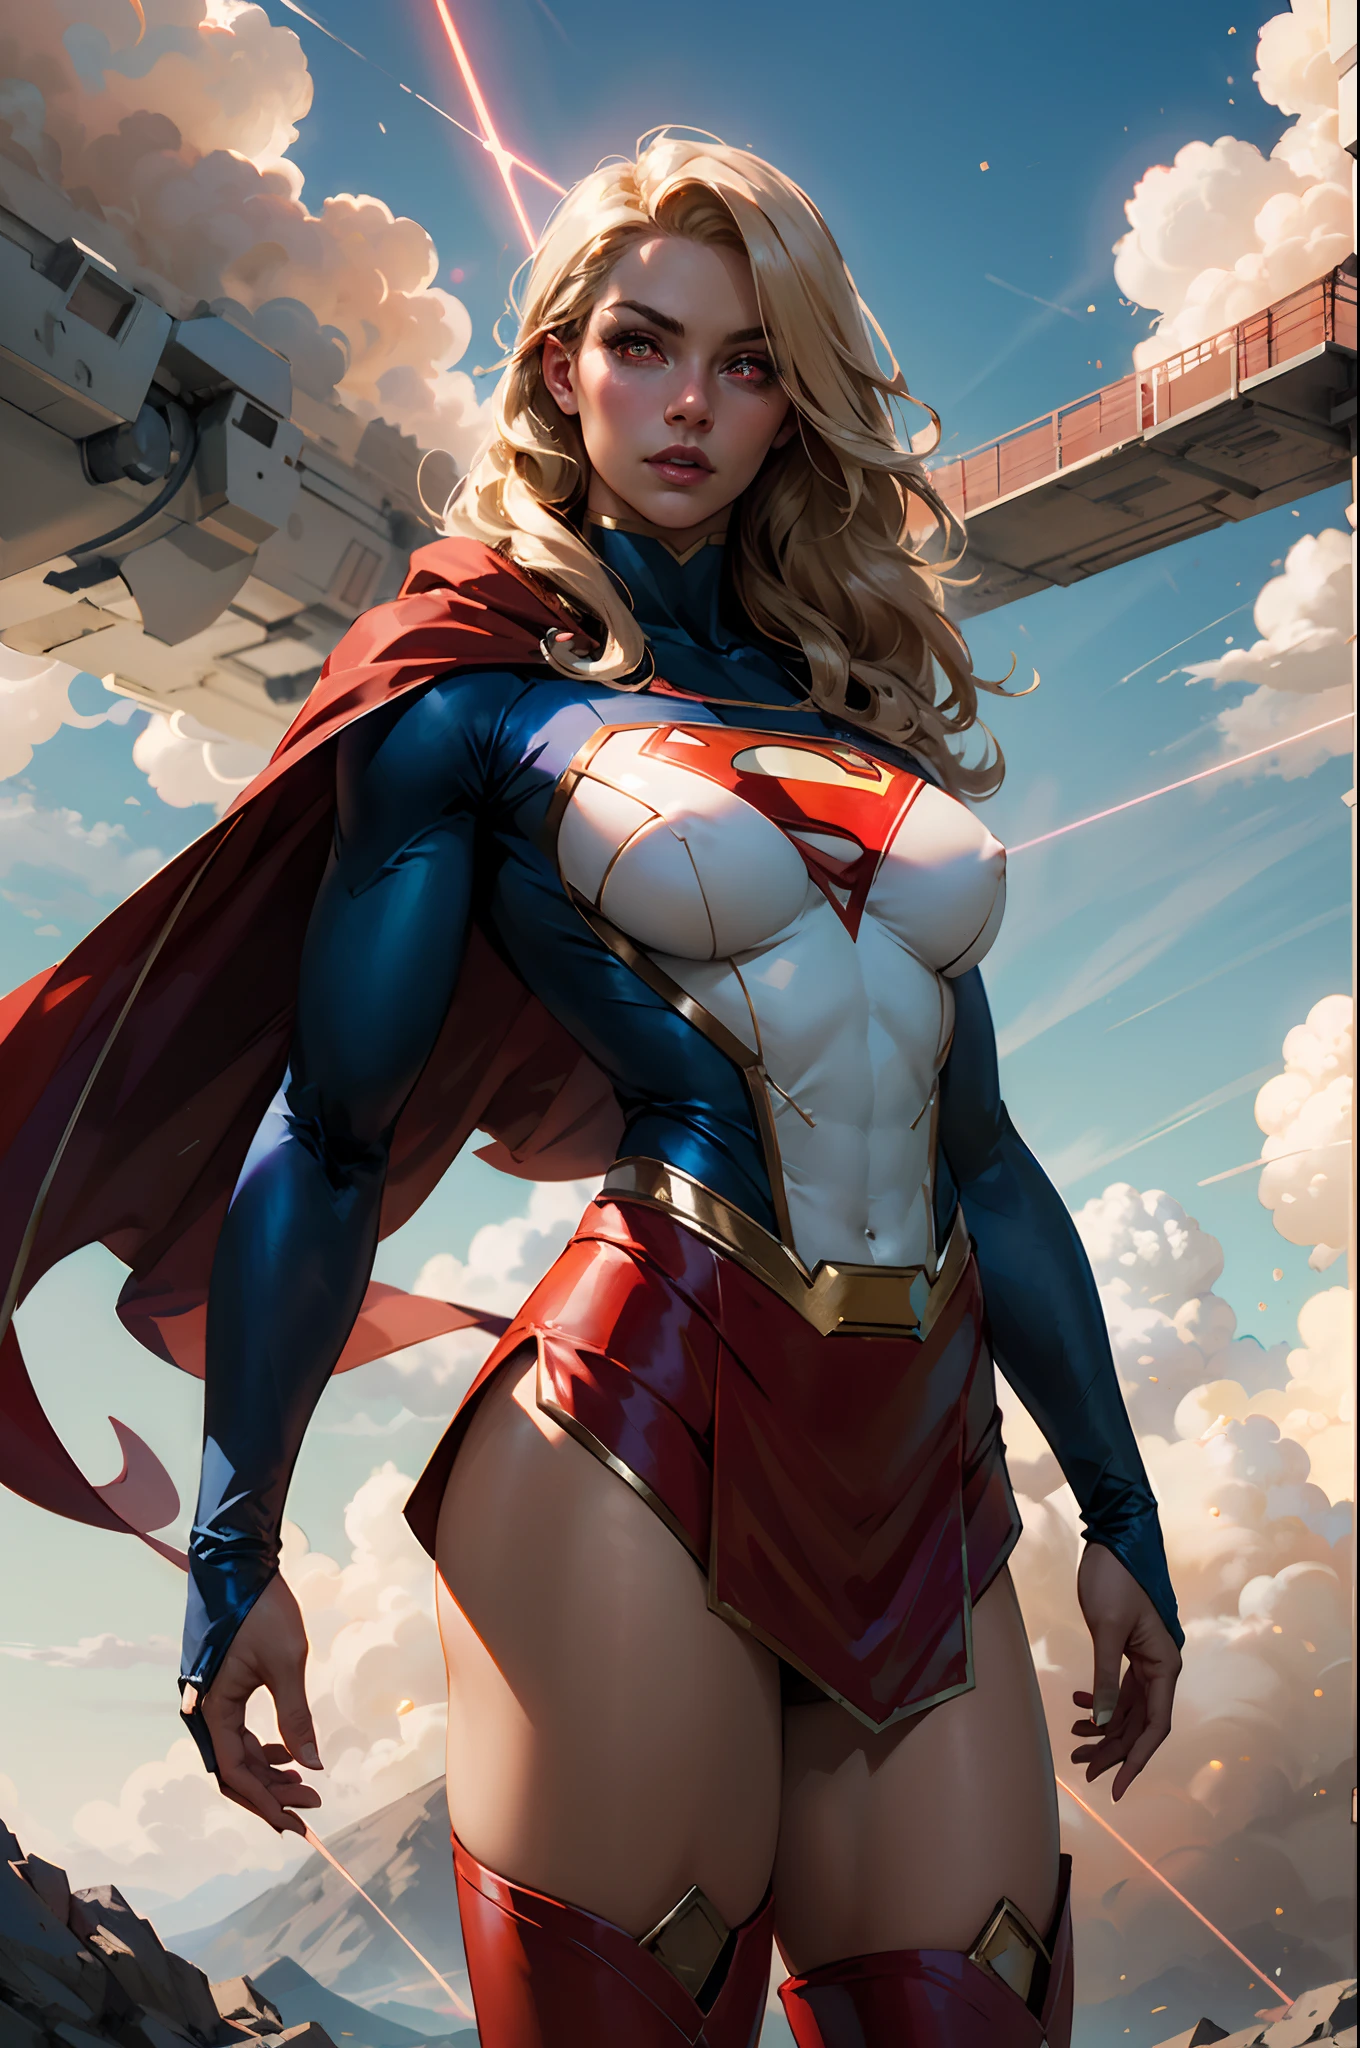 nijistyle, Tir de cowboy d&#39;une belle femme en costume de Superman, longs cheveux blonds, Héroïque, yeux rouges brillants, yeux laser, cap, particule, des nuages, skyporn, jupe rouge, bottes rouges, pose sexy, gros pis,